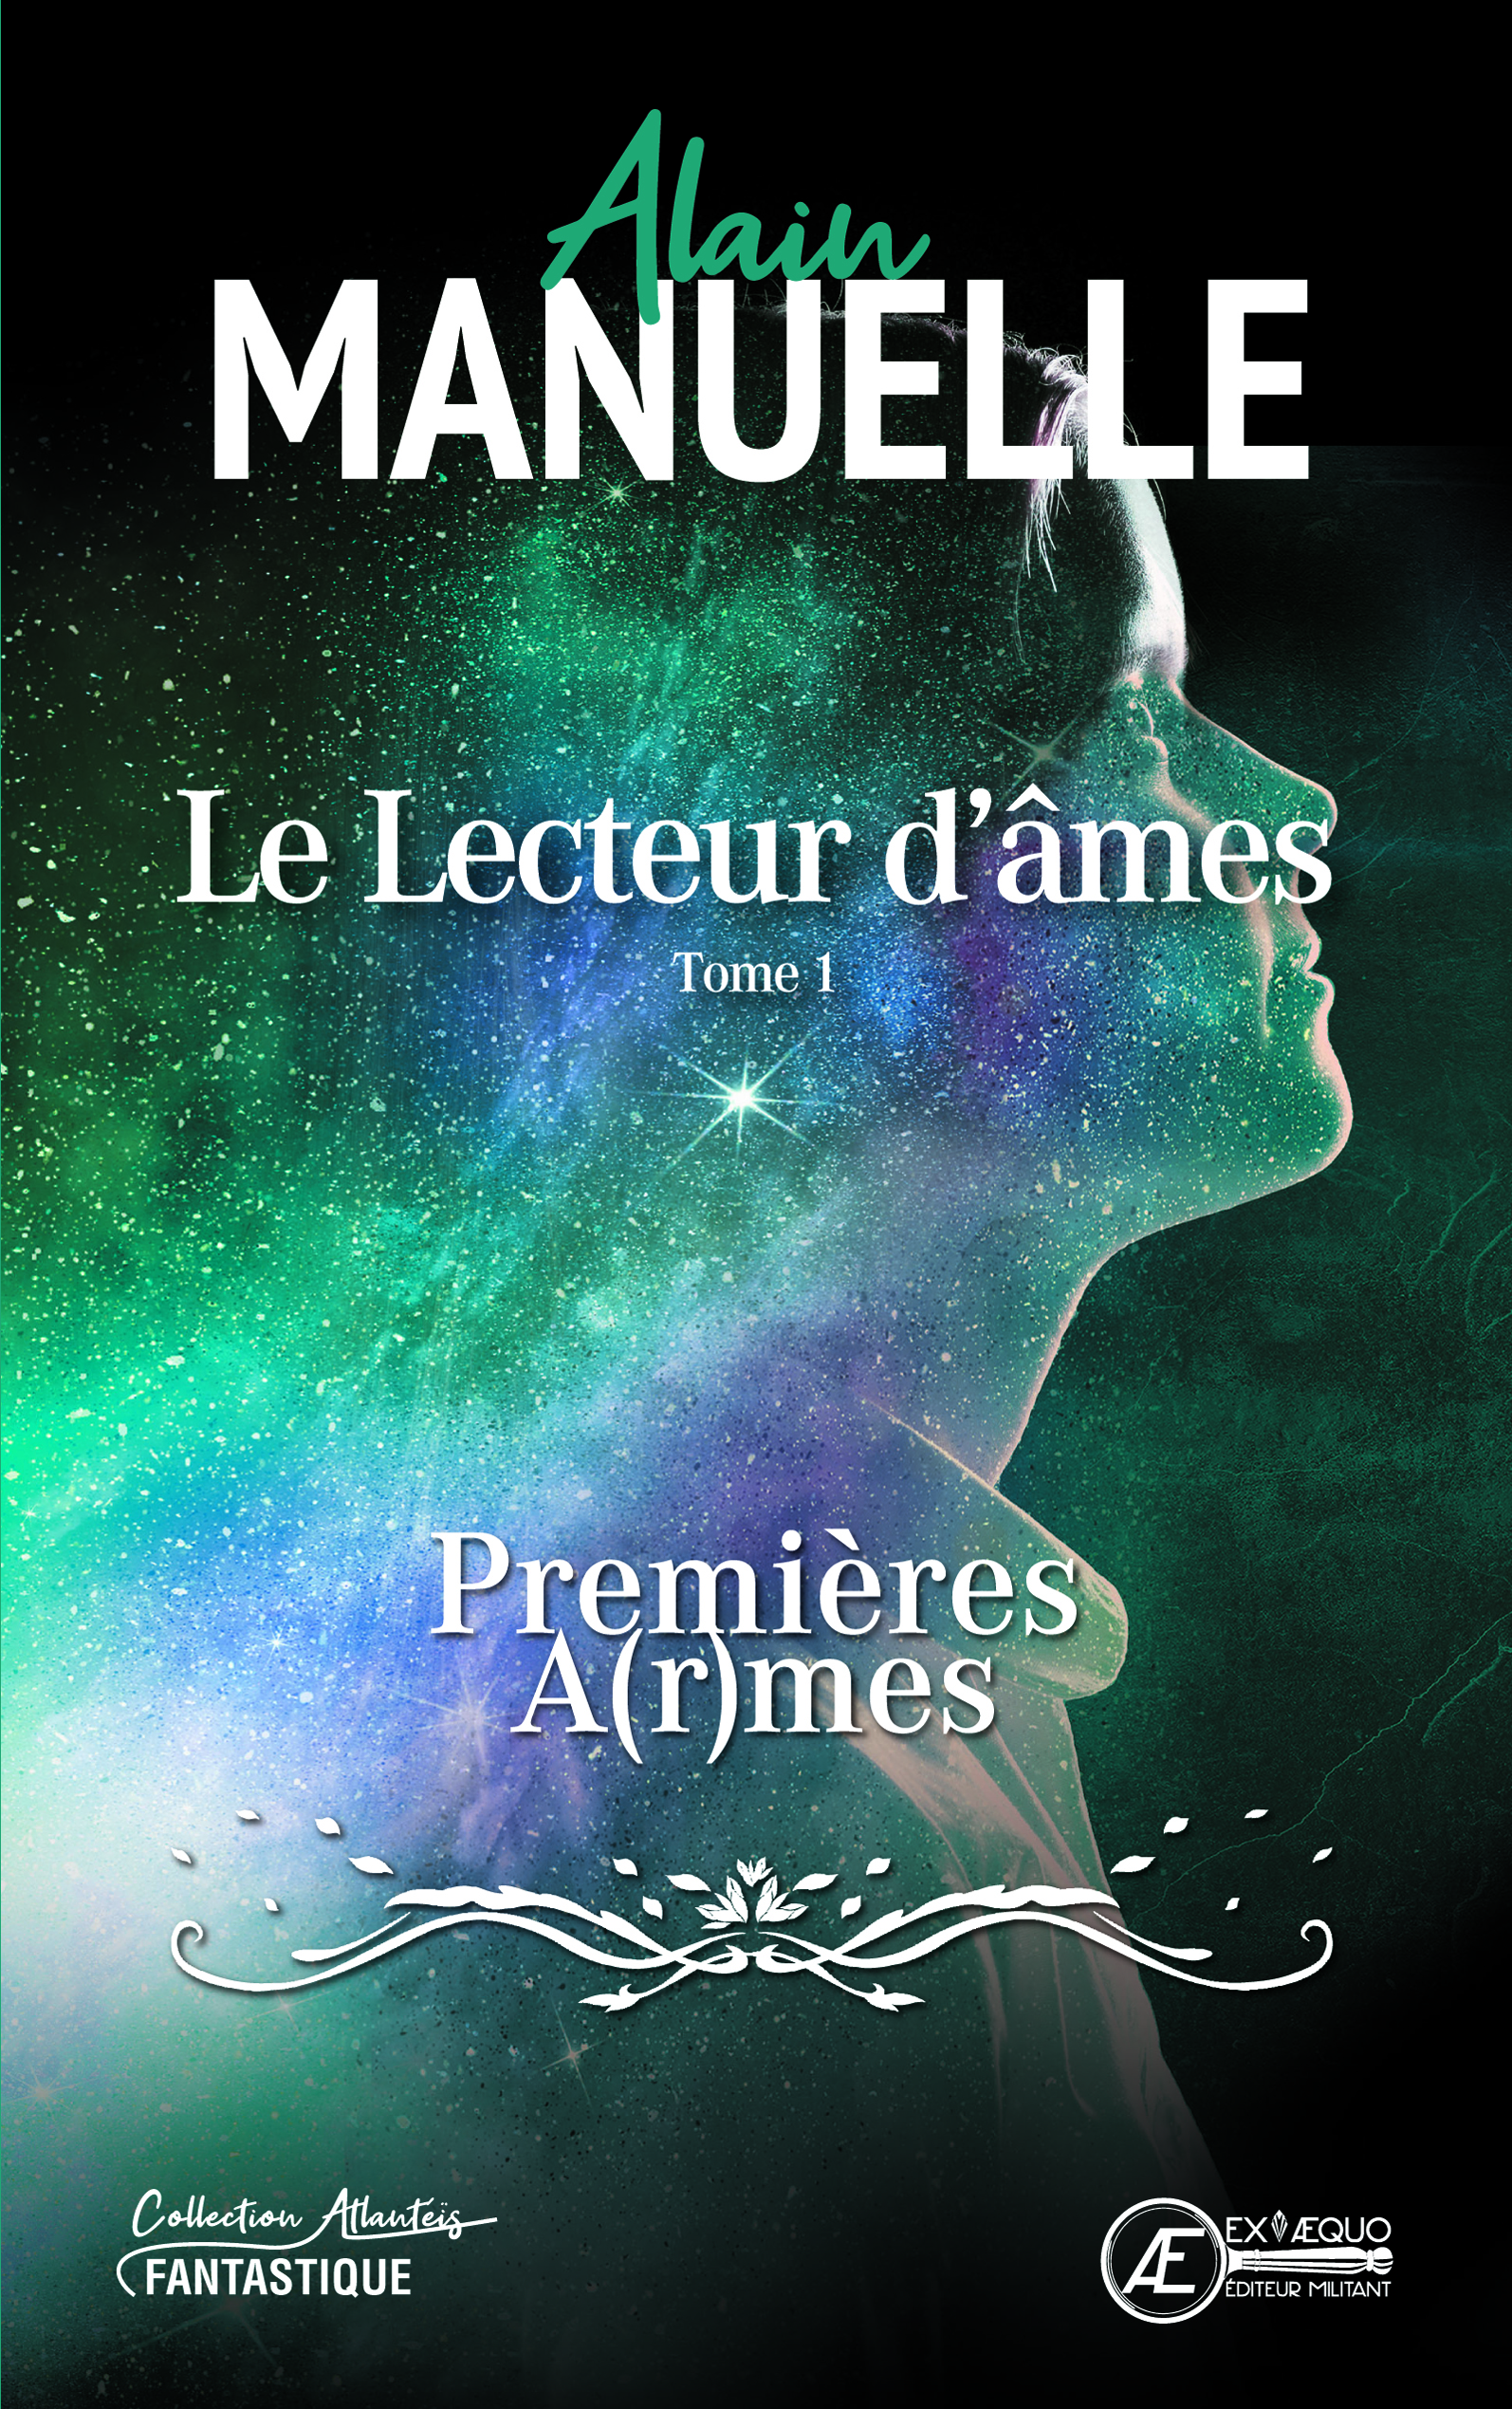 You are currently viewing Le Lecteur d’âmes Tome 1 – Premières a(r)mes, d’Alain Manuelle